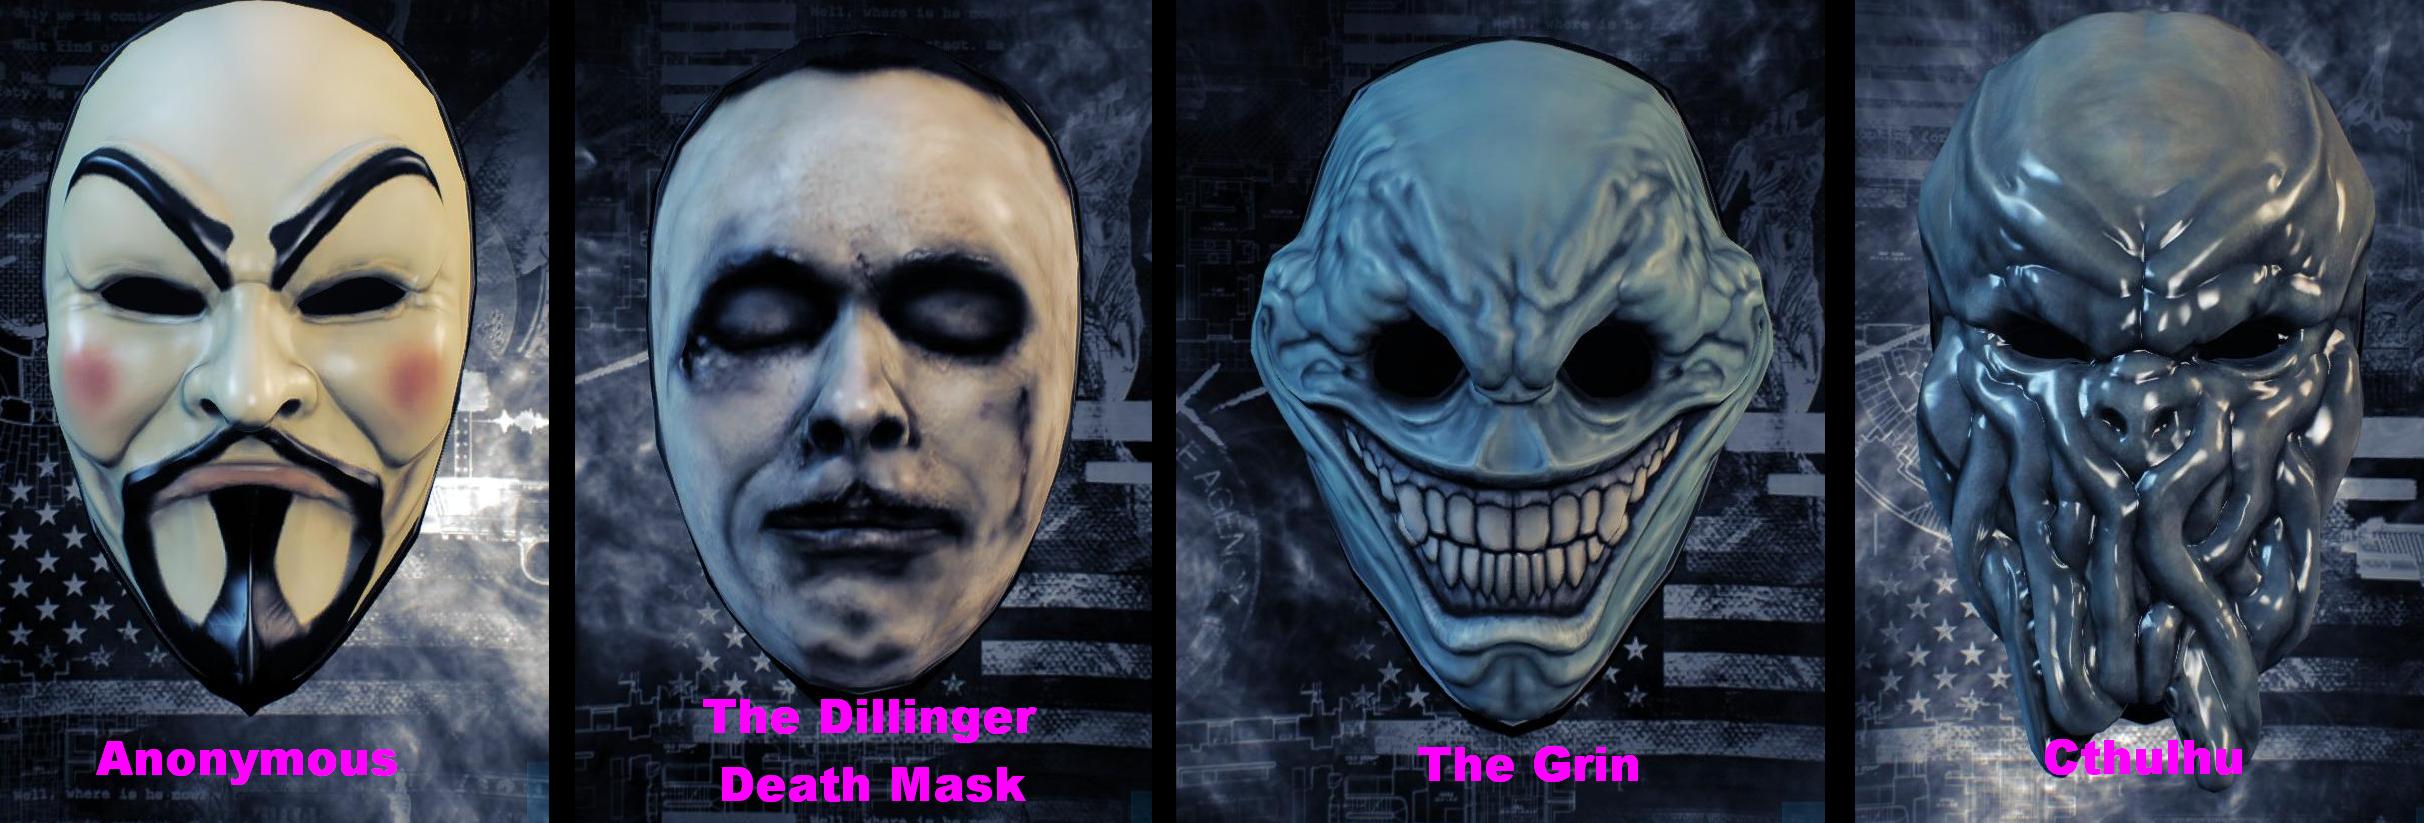 Как получать маски в игре. Payday 2 маски. Крутые маски в payday 2. Маски персонажей из игр. Персонажи игр в масках.